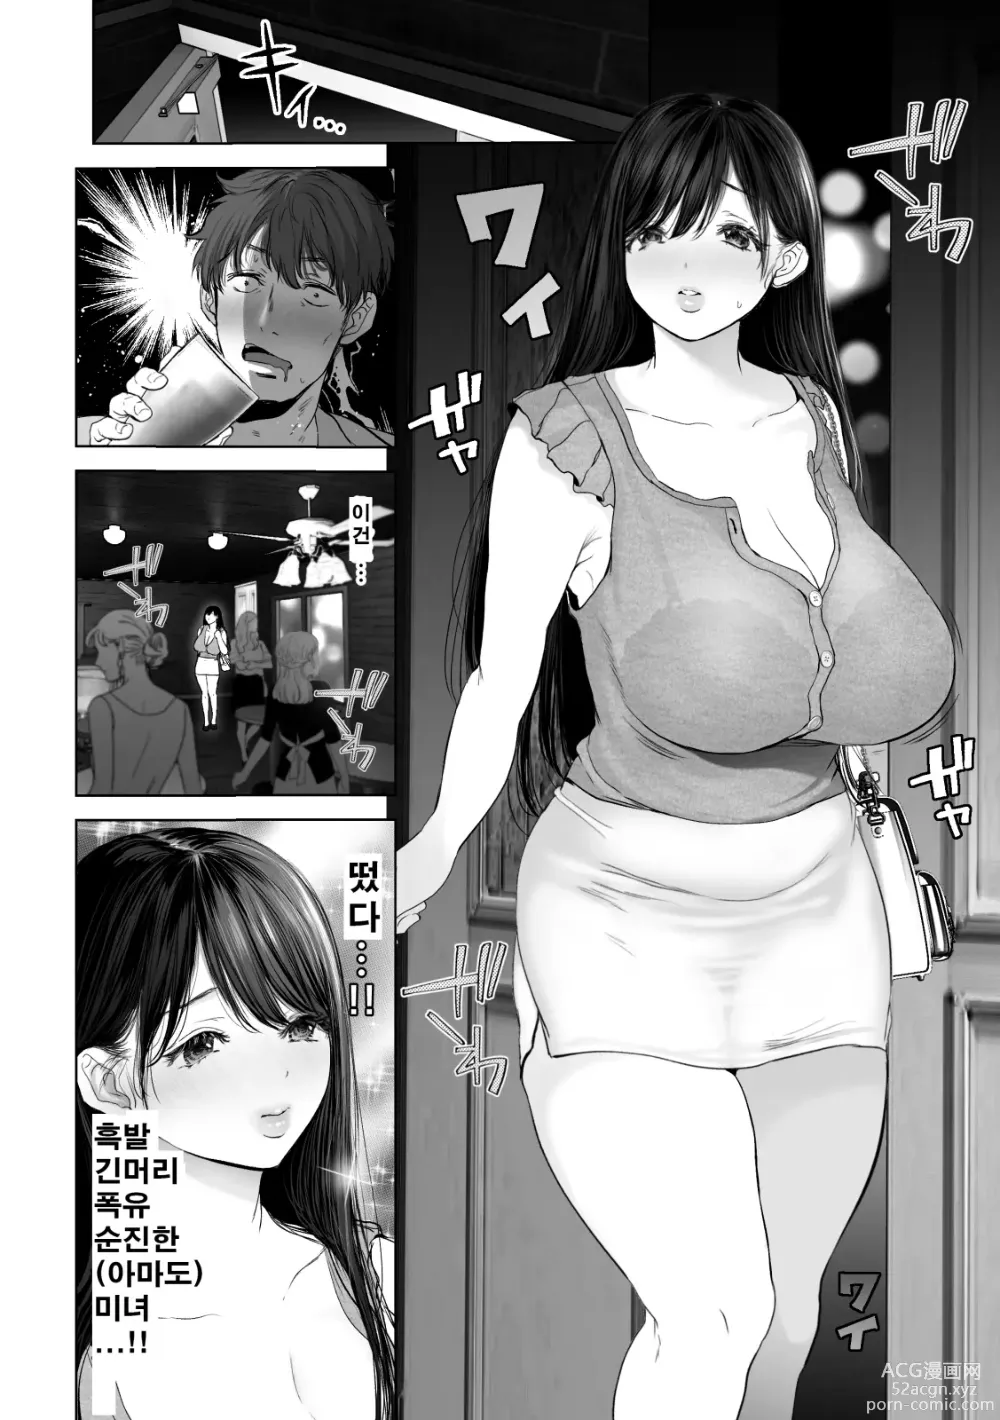 Page 3 of doujinshi あなたが望むなら2～ナンパ3Pスク水電マ強制絶頂編～ (decensored)